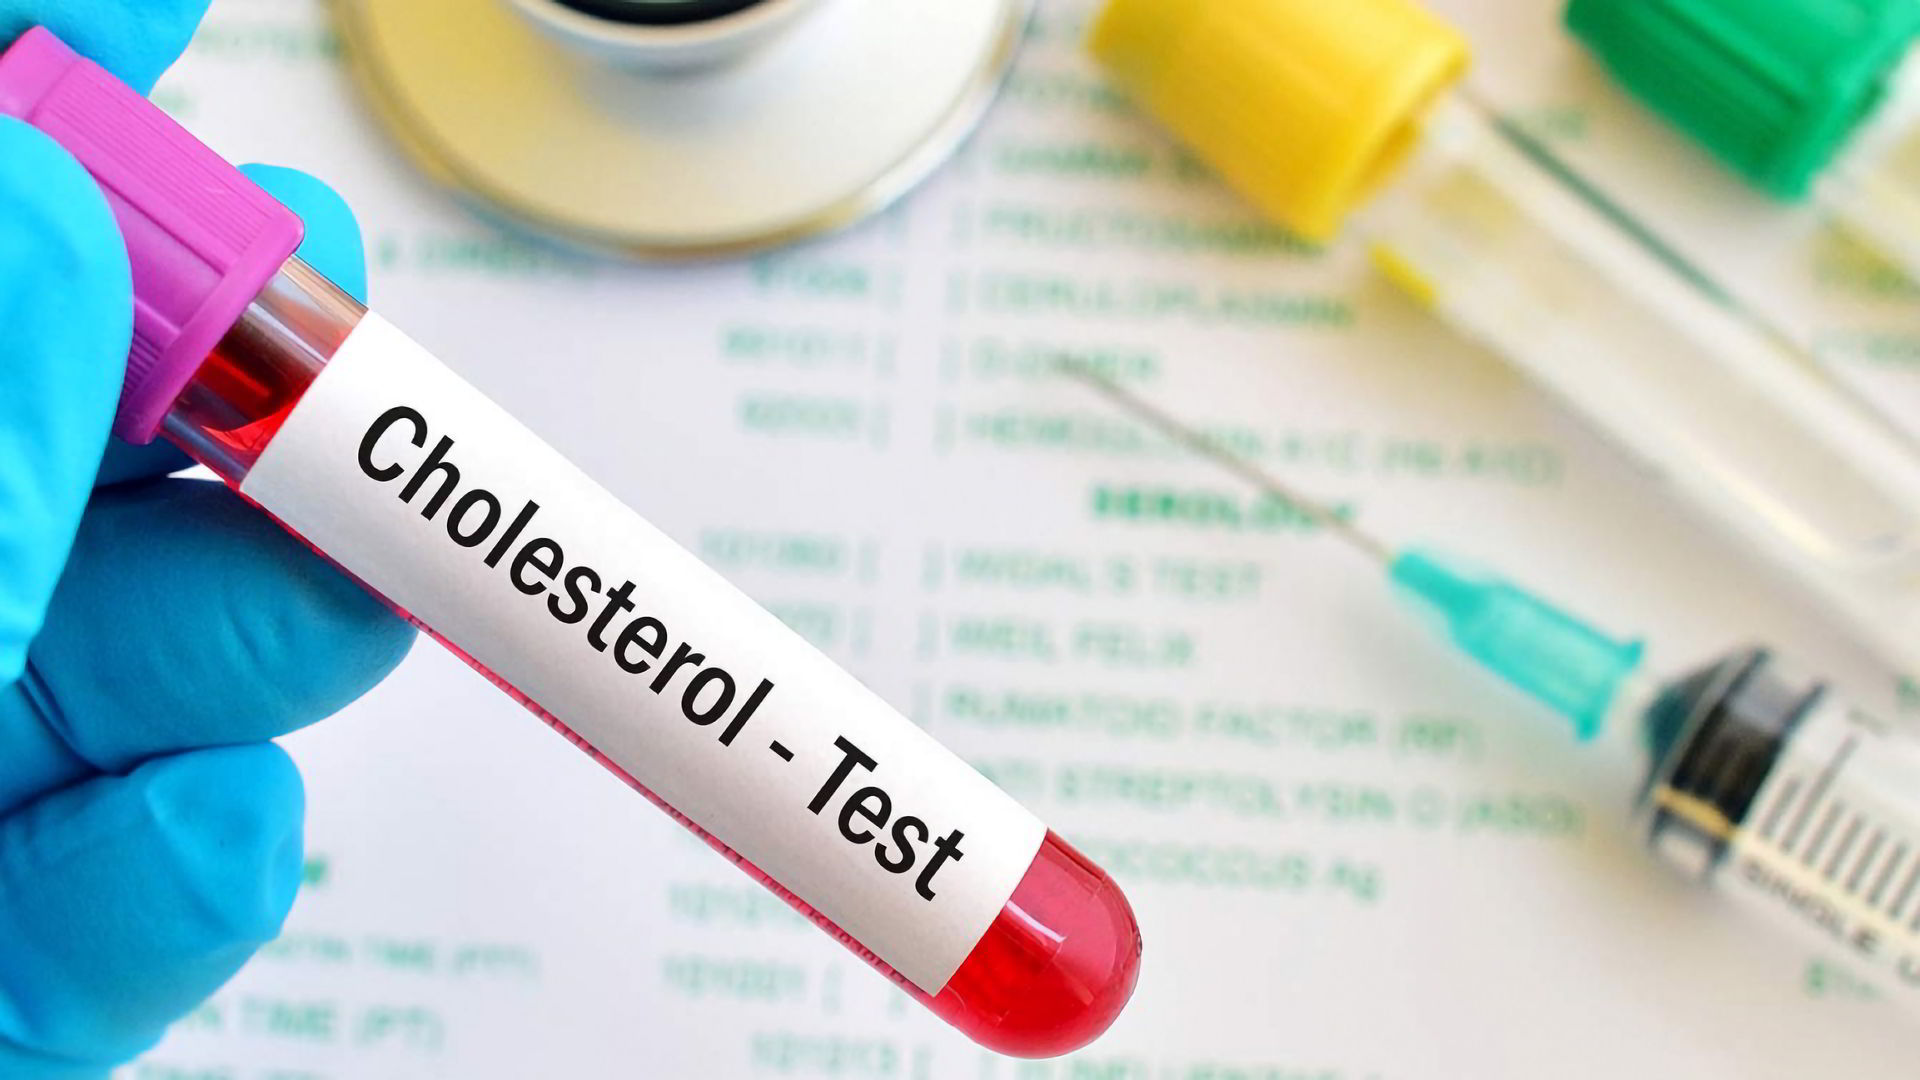 Krvný test na cholesterol.